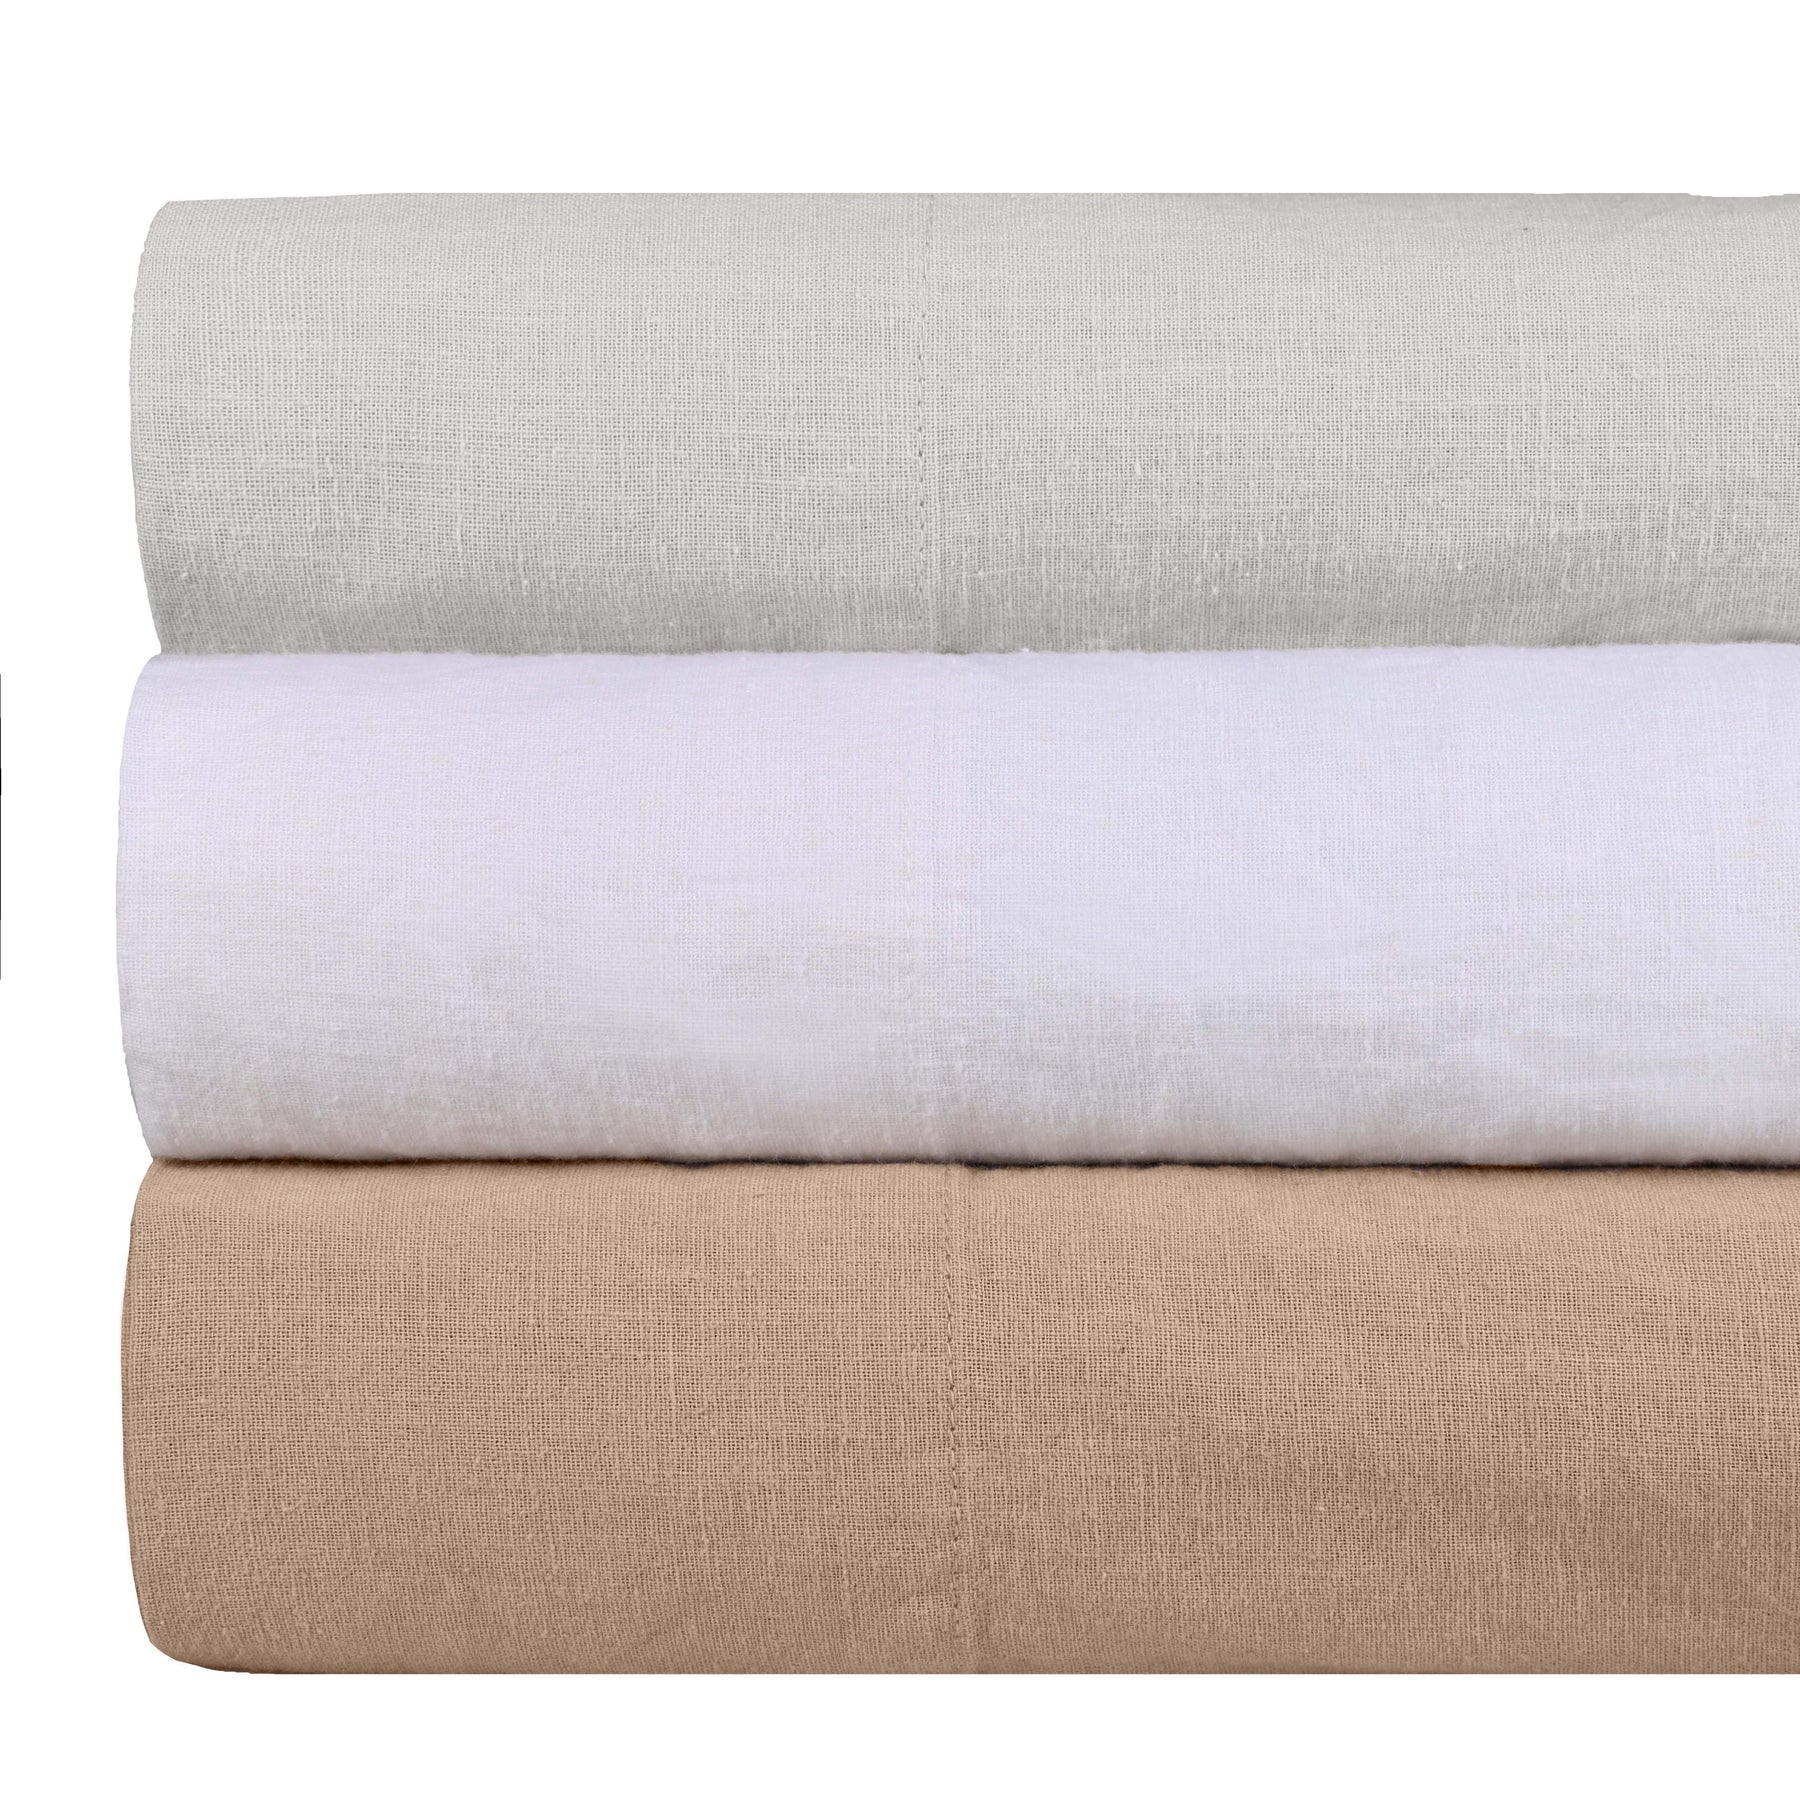 Superior Cotton Linen Blend Deep Pocket 4-Piece Bed Sheet Set - Silver